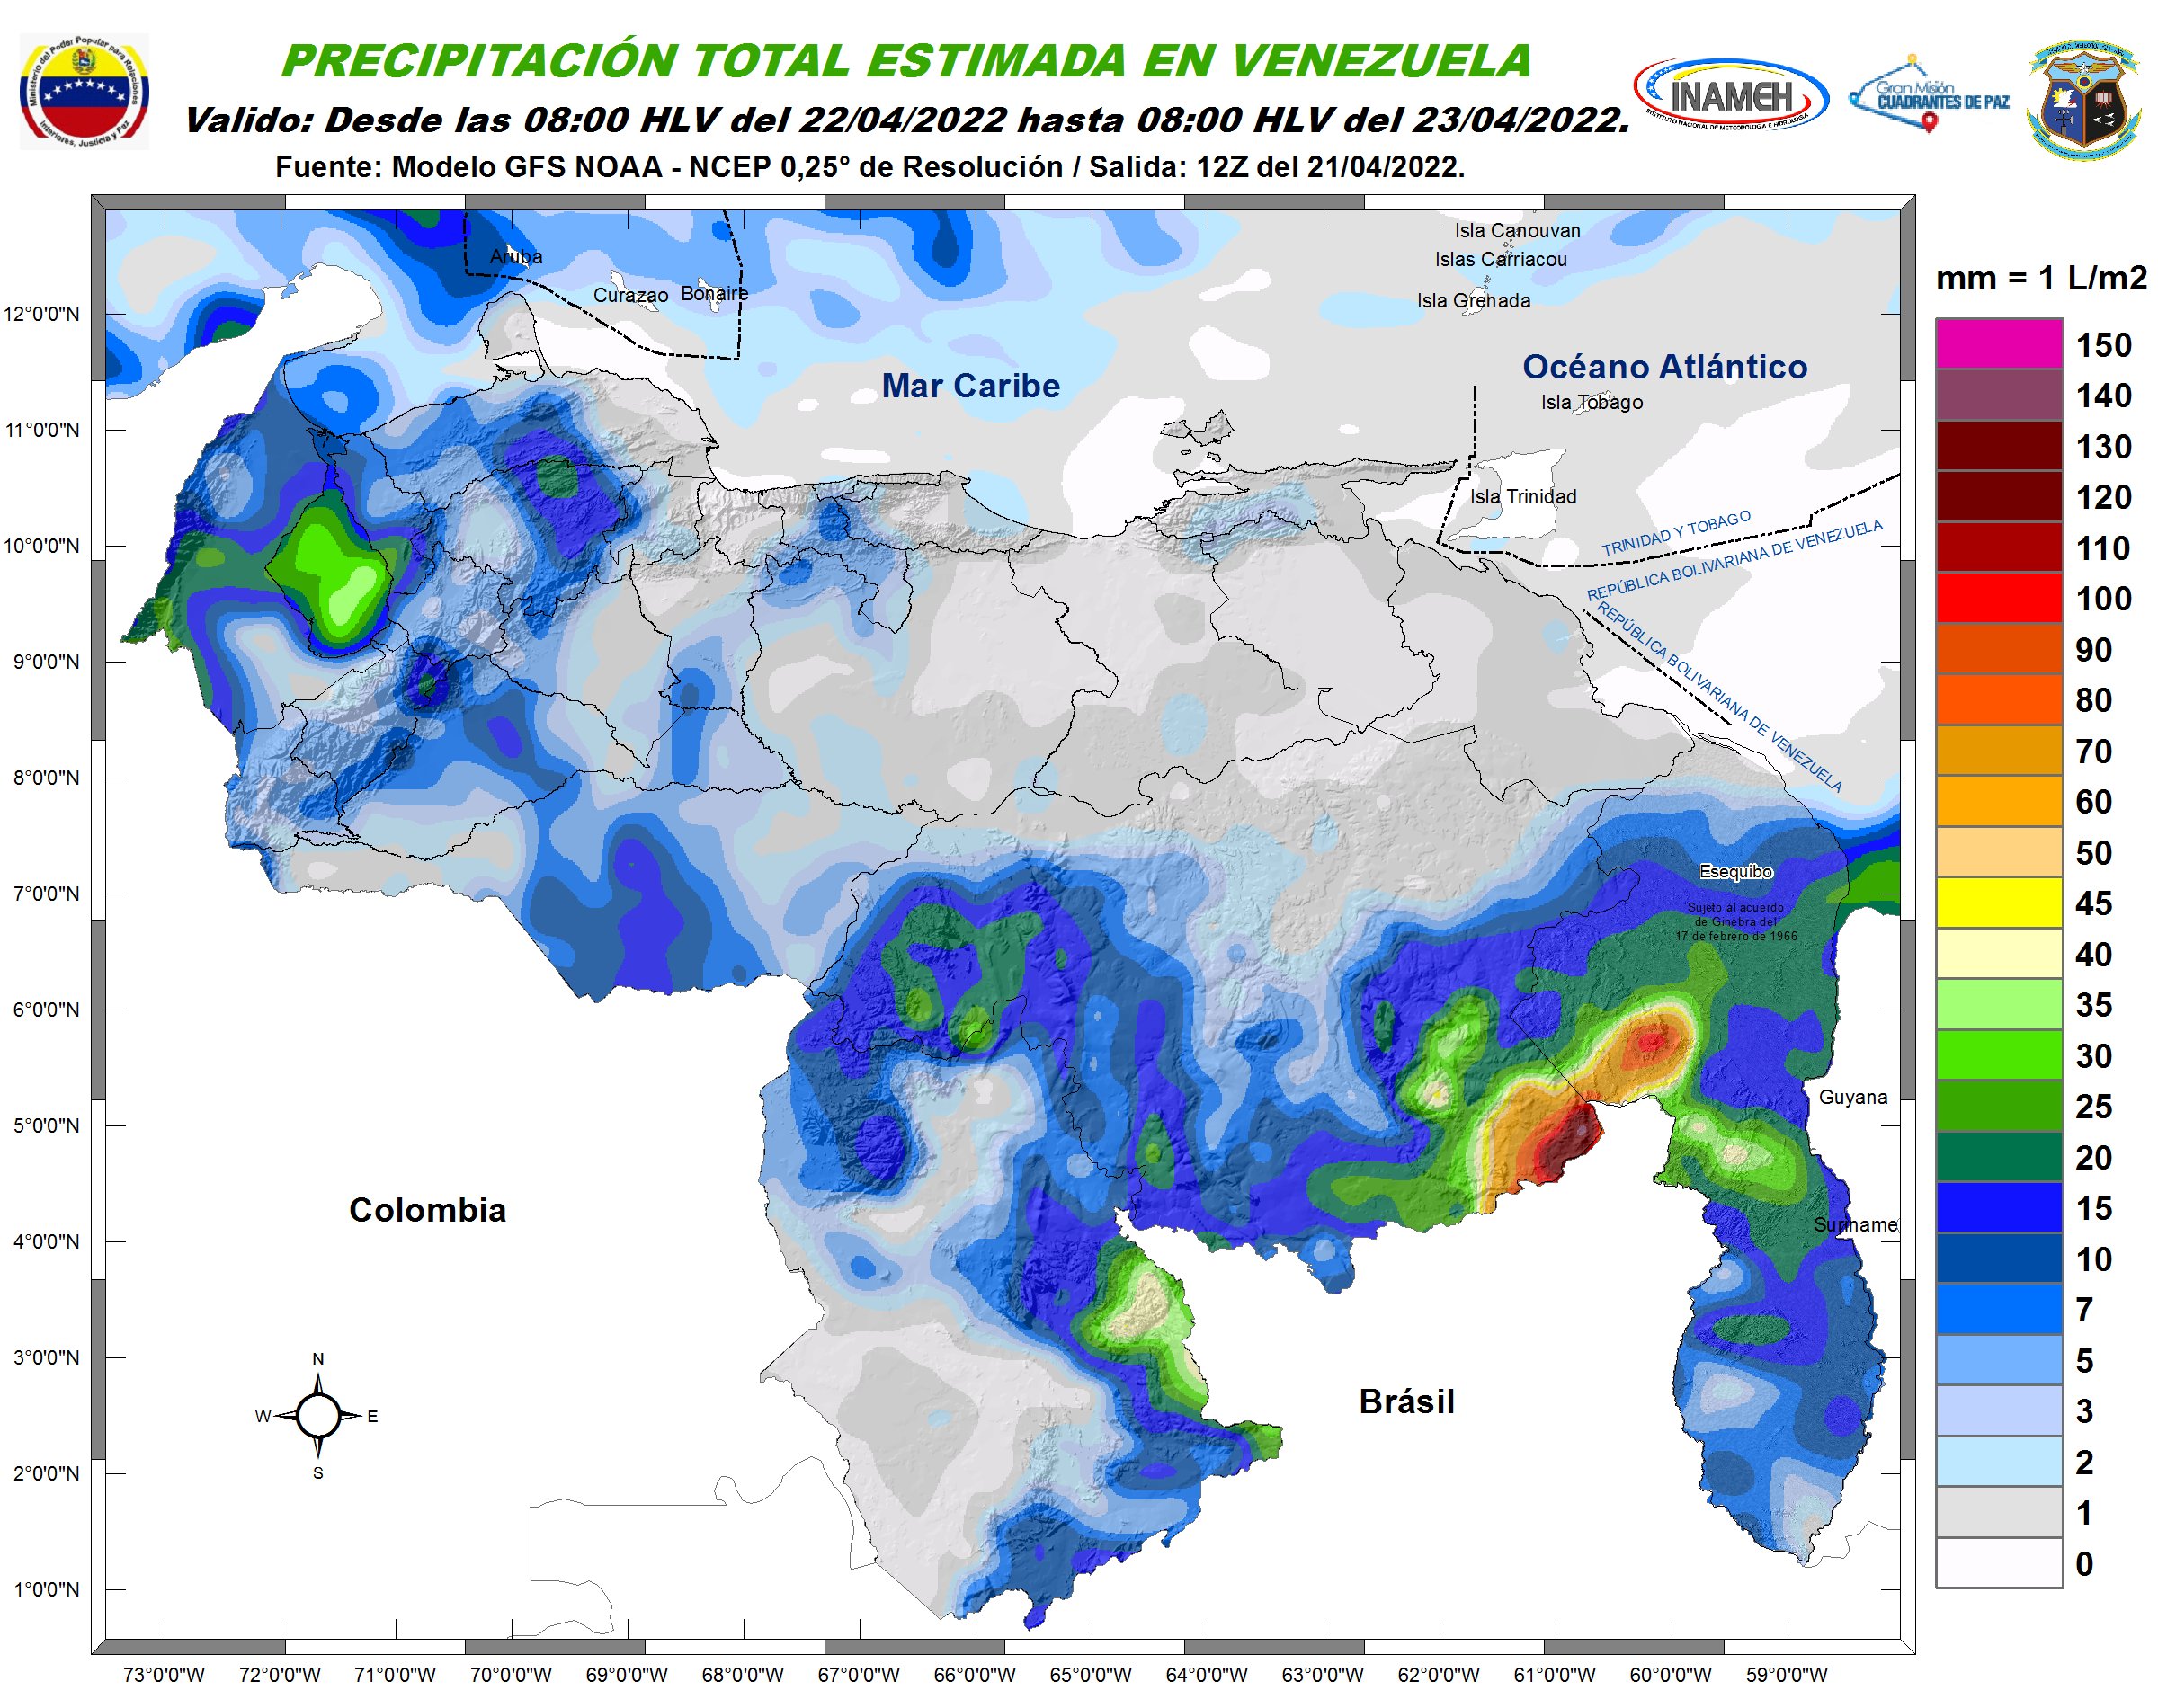 Inameh prevé la continuación de lluvias en algunos estados de Venezuela #22Abr